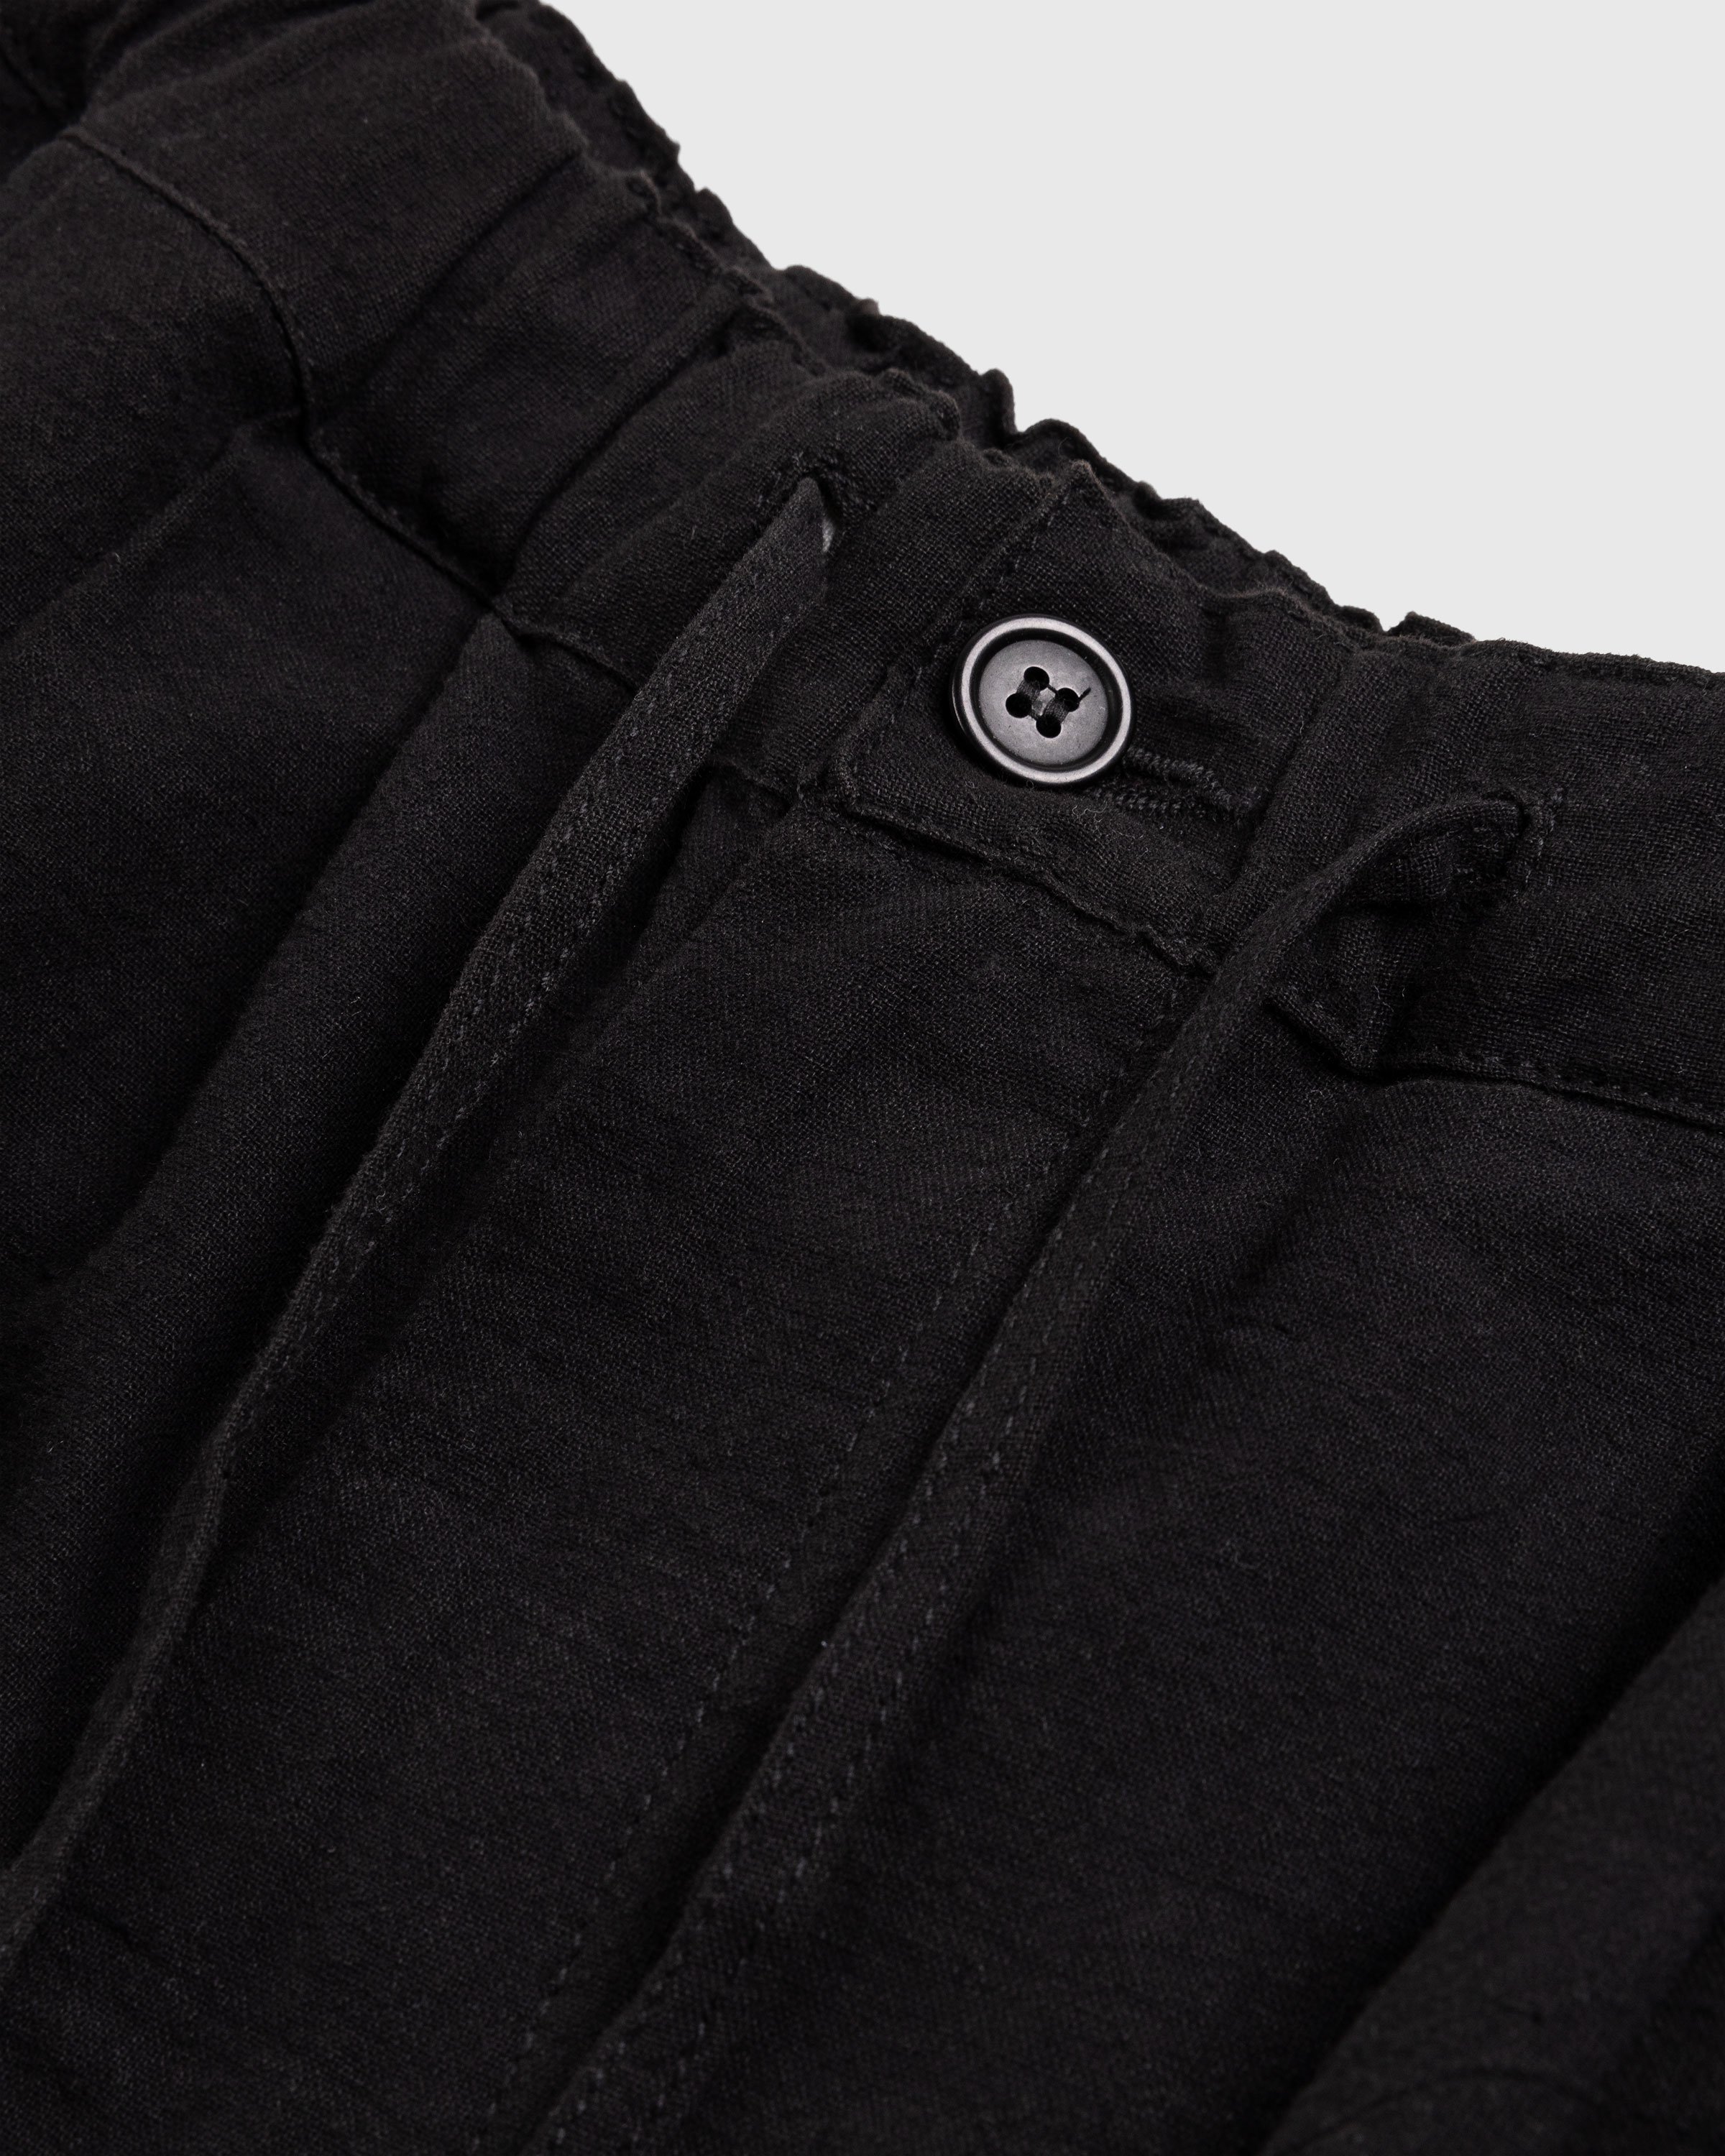 Story mfg. - Bridge Shorts Sampler Black - Clothing - Black - Image 4